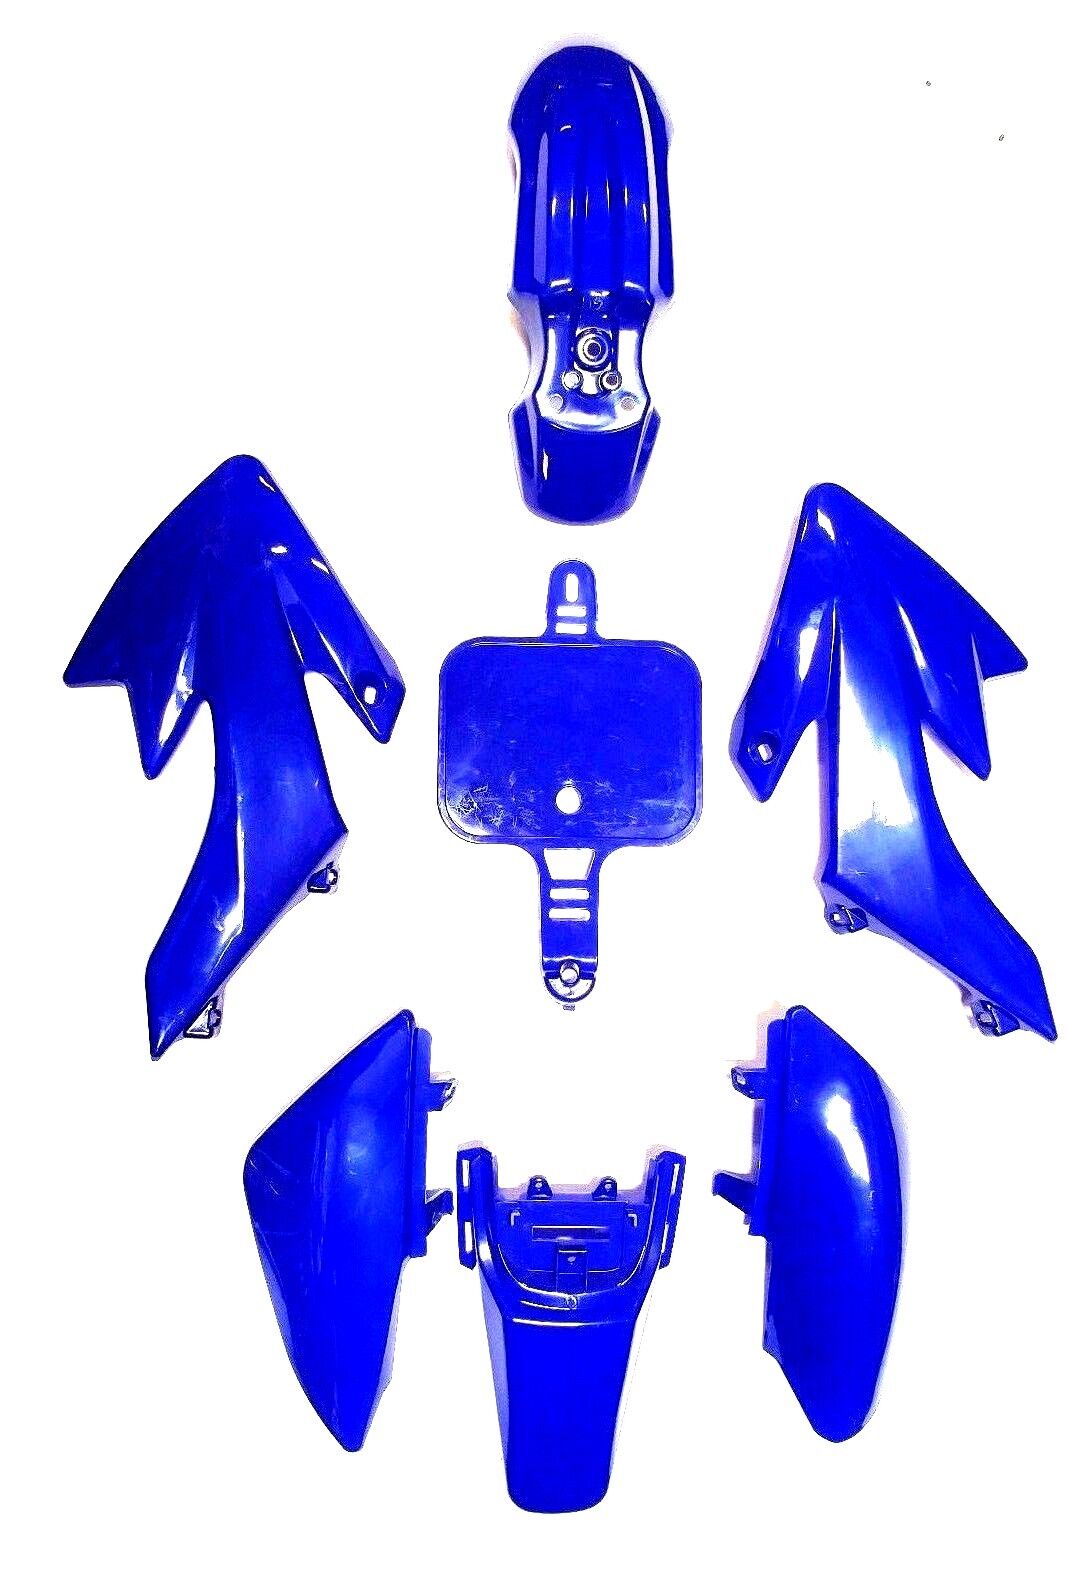 PLASTIC DIRT PIT BIKE BODY KIT FENDER FOR HONDA XR50 CRF50 125 SSR SDG BLUE